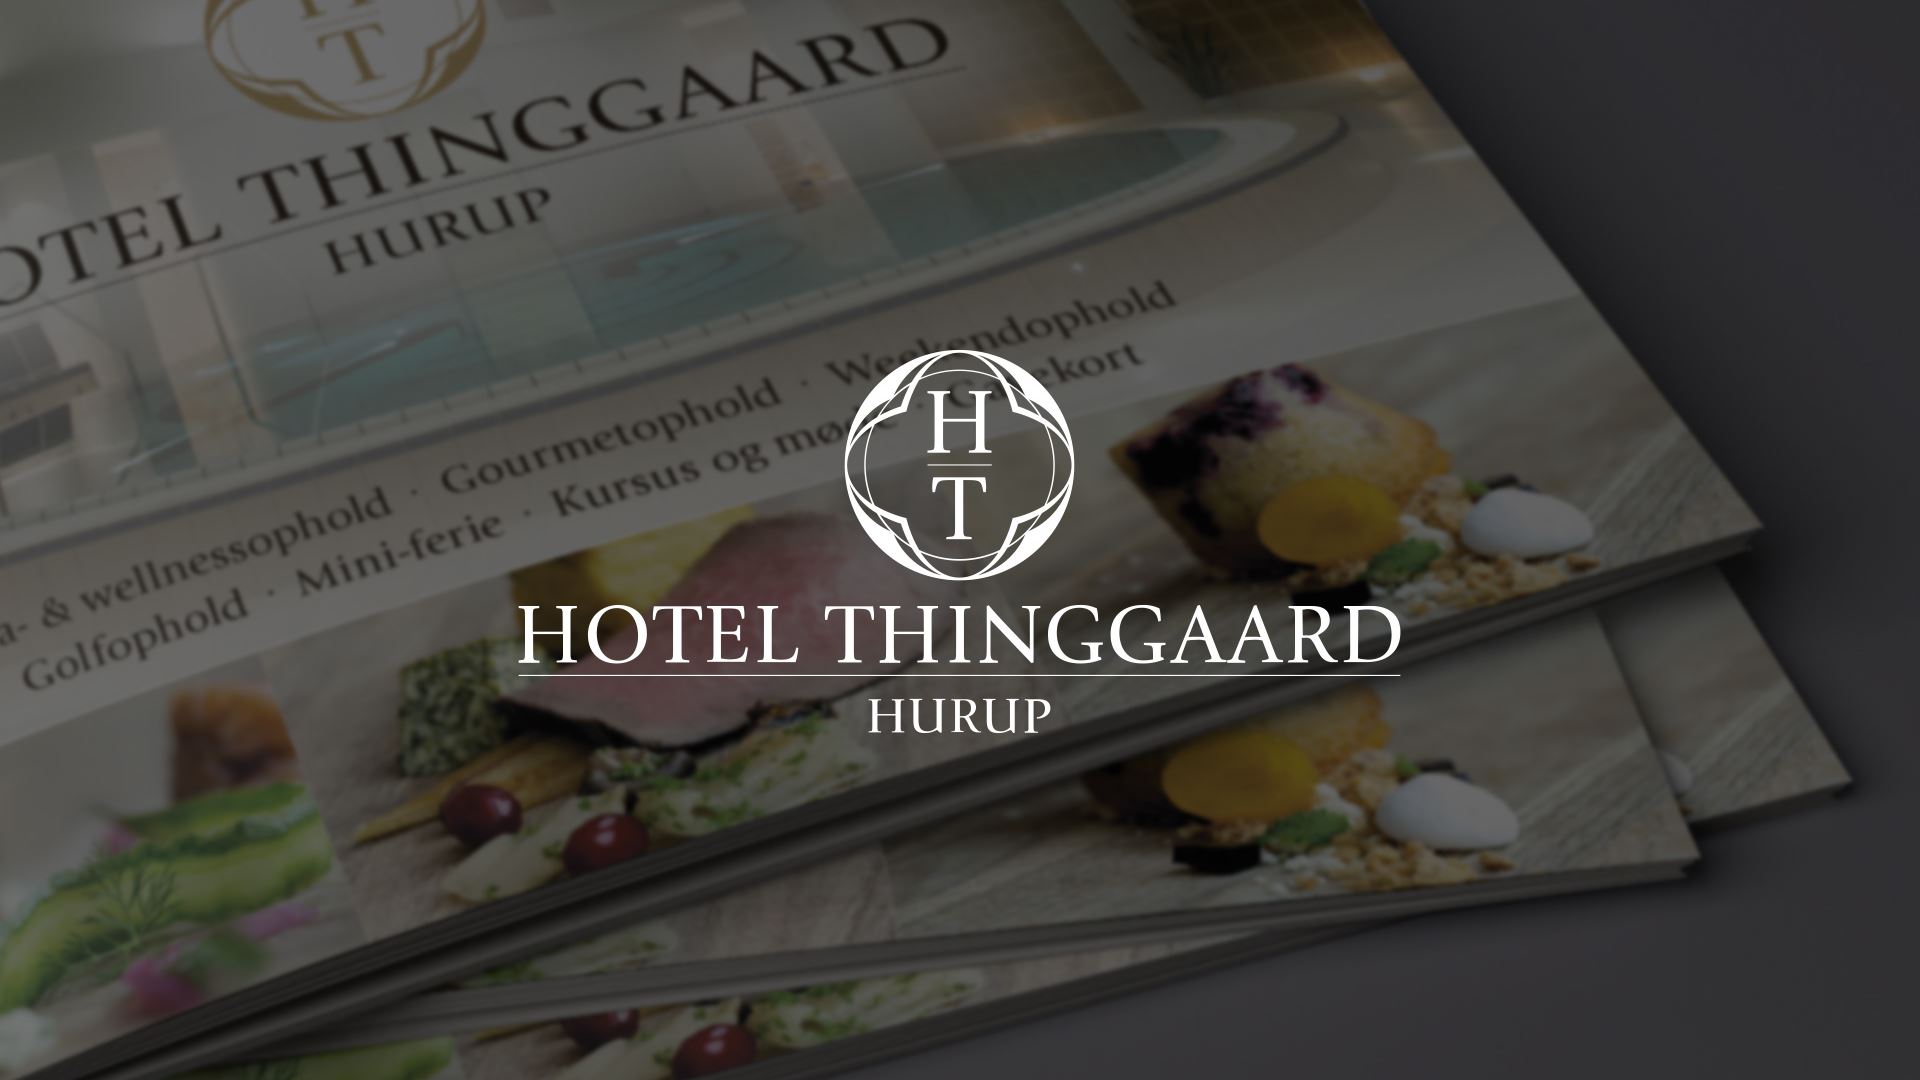 Hotel Thinggaard visuel identitet Kong Gulerod Reklamebureau